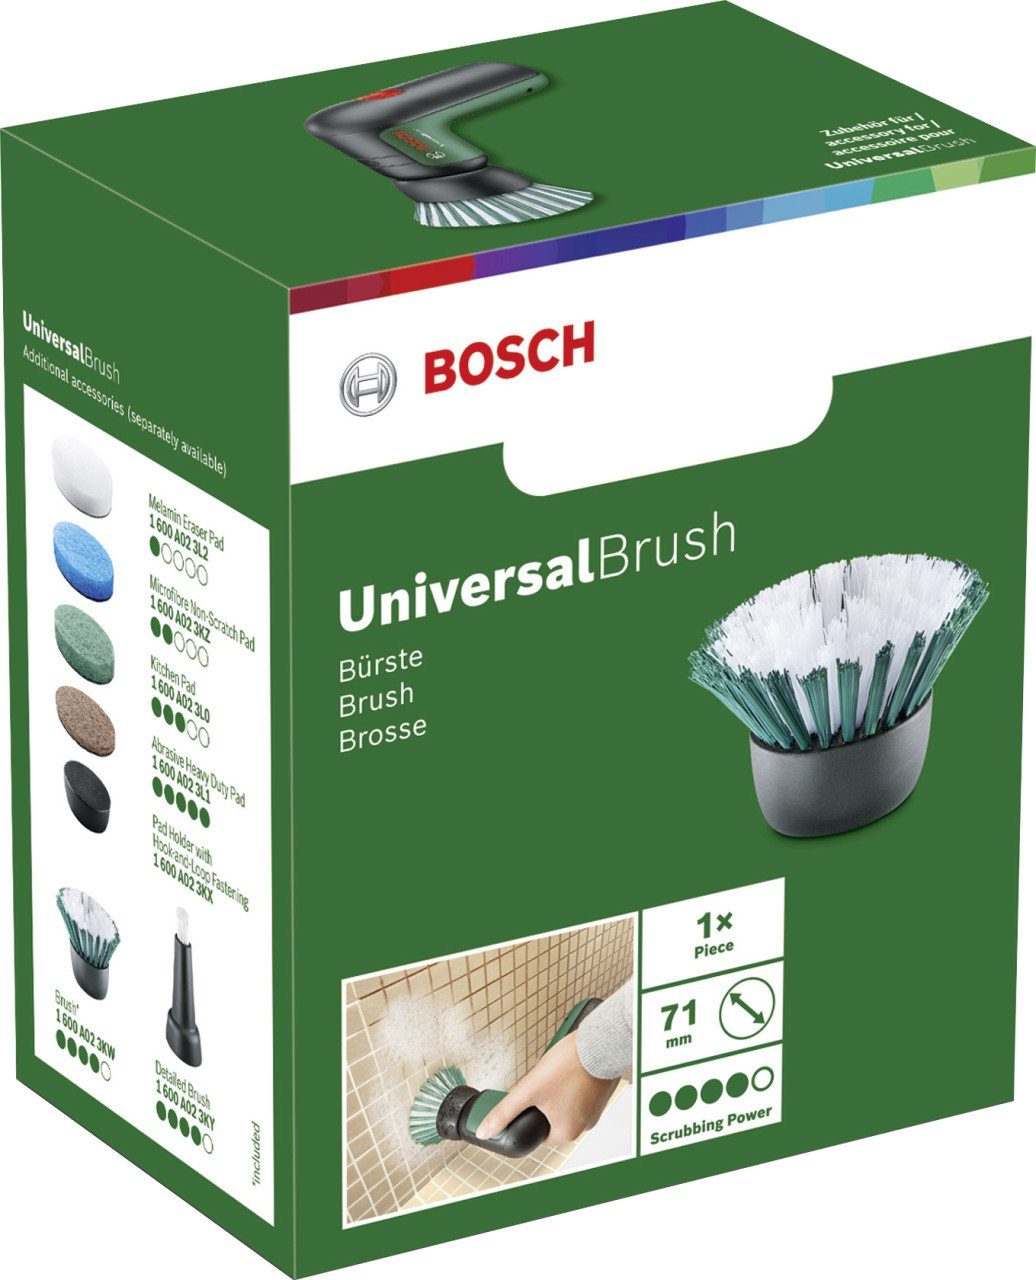 Borstenbürste Bosch für BOSCH Drahtbürste UniversalBrush